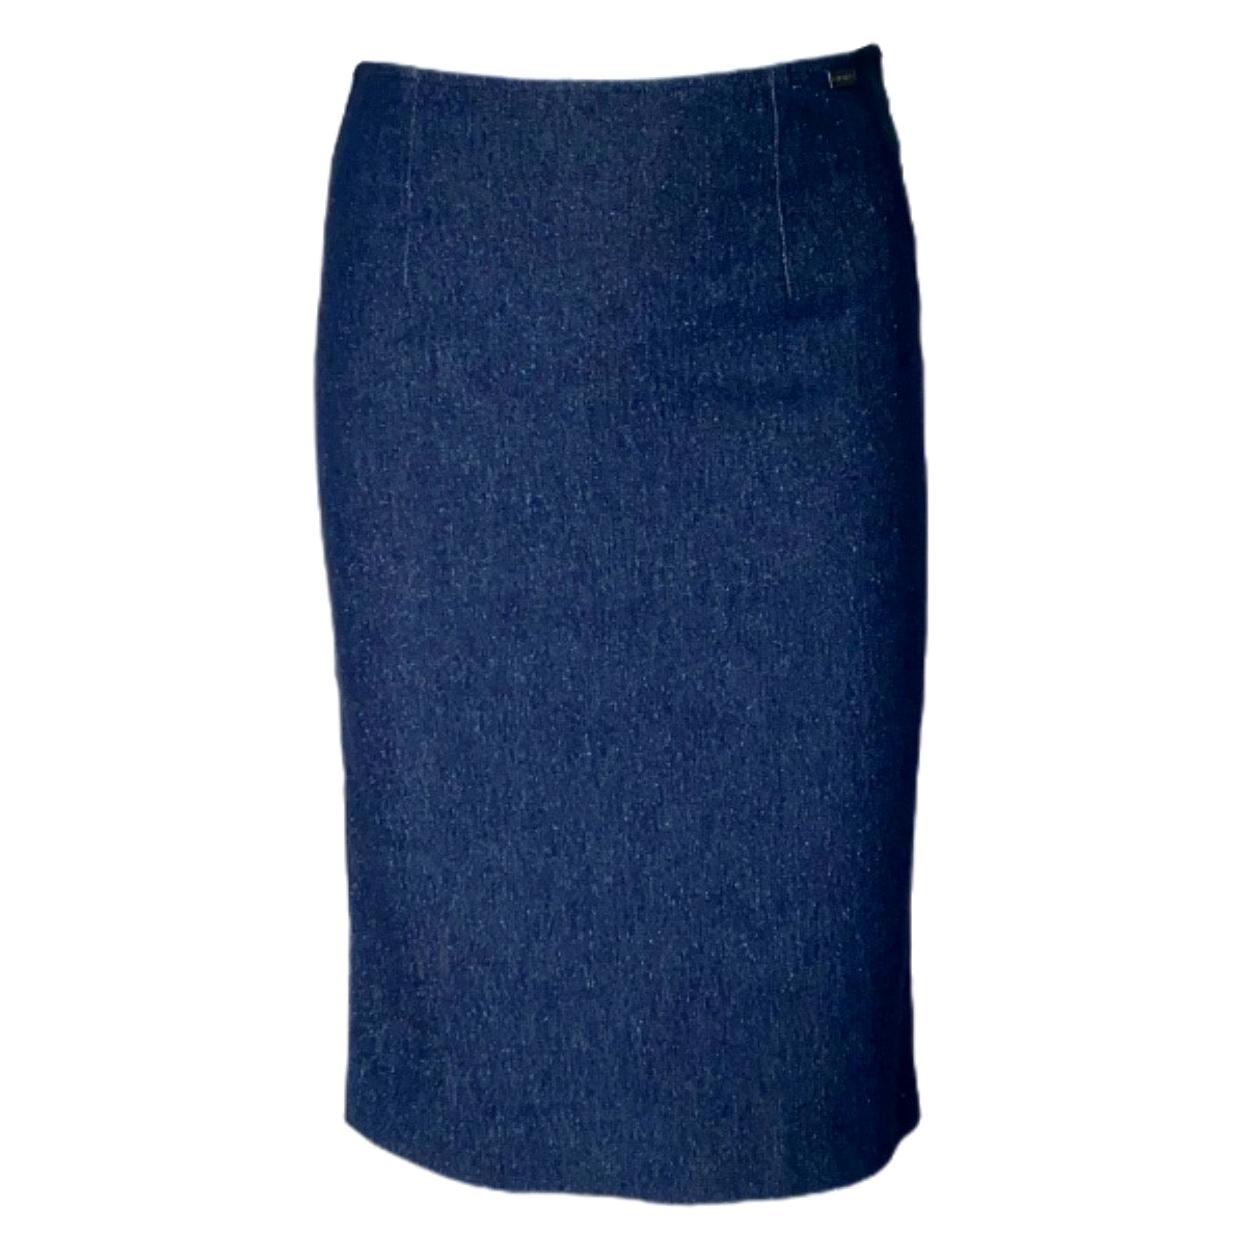 CHANEL Sparkling Blue Denim Jeans Tuxedo Style Skirt 34